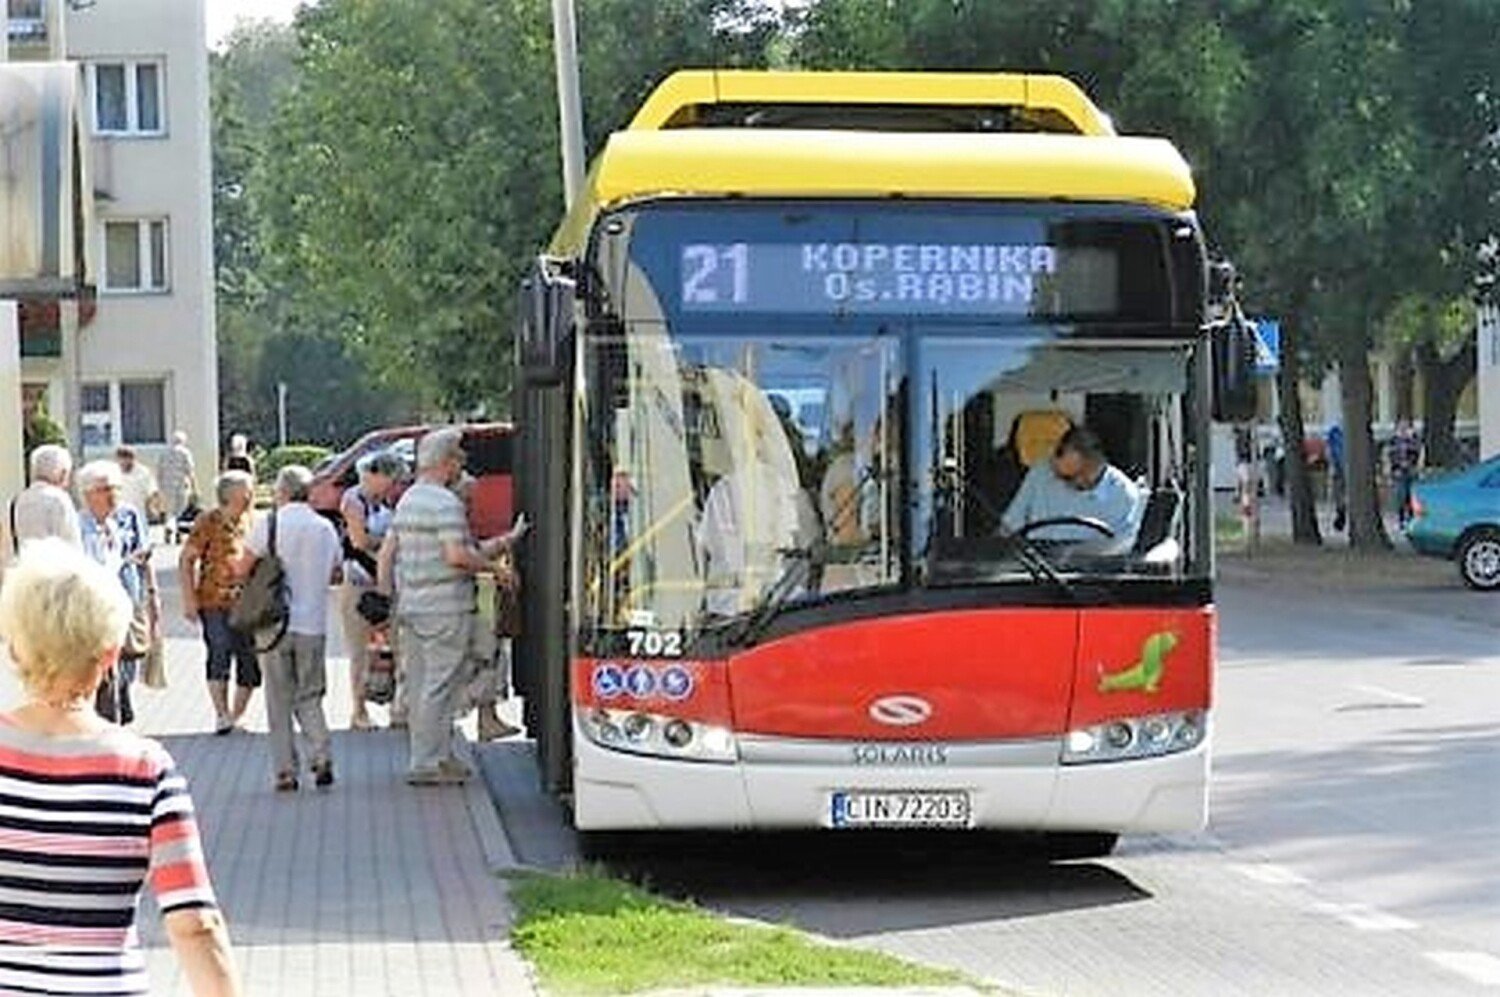 Inowrocław. Od 1 maja zmiana rozkładów jazdy i niektórych tras autobusów MPK.  Pasażerowie zwracajcie uwagę na informacje na przystankach | Inowrocław  Nasze Miasto